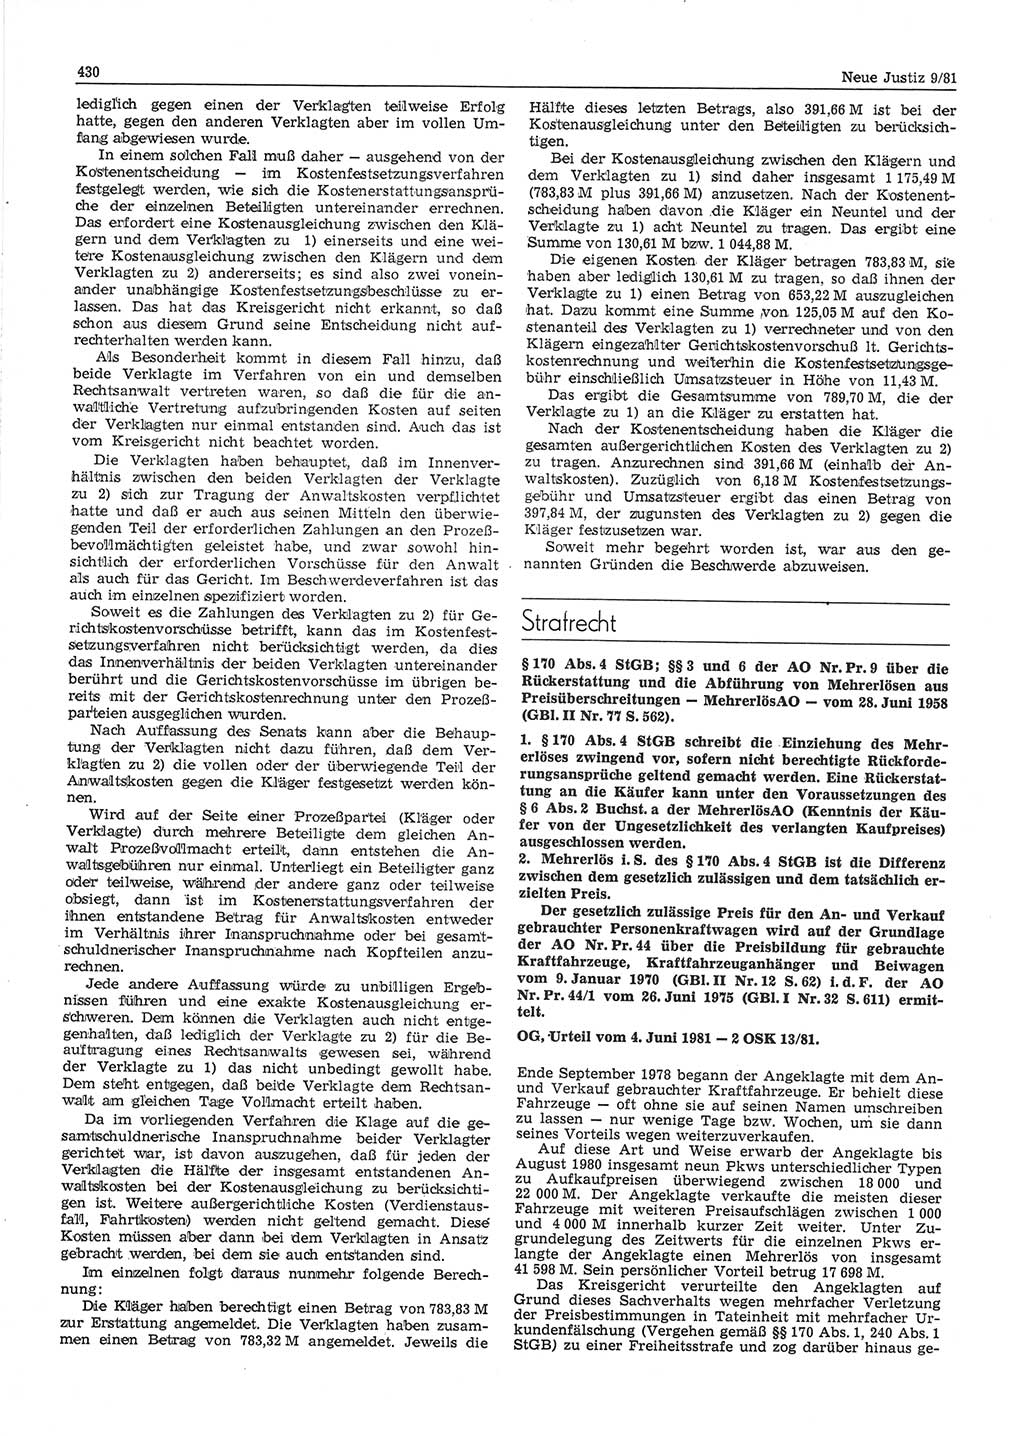 Neue Justiz (NJ), Zeitschrift für sozialistisches Recht und Gesetzlichkeit [Deutsche Demokratische Republik (DDR)], 35. Jahrgang 1981, Seite 430 (NJ DDR 1981, S. 430)